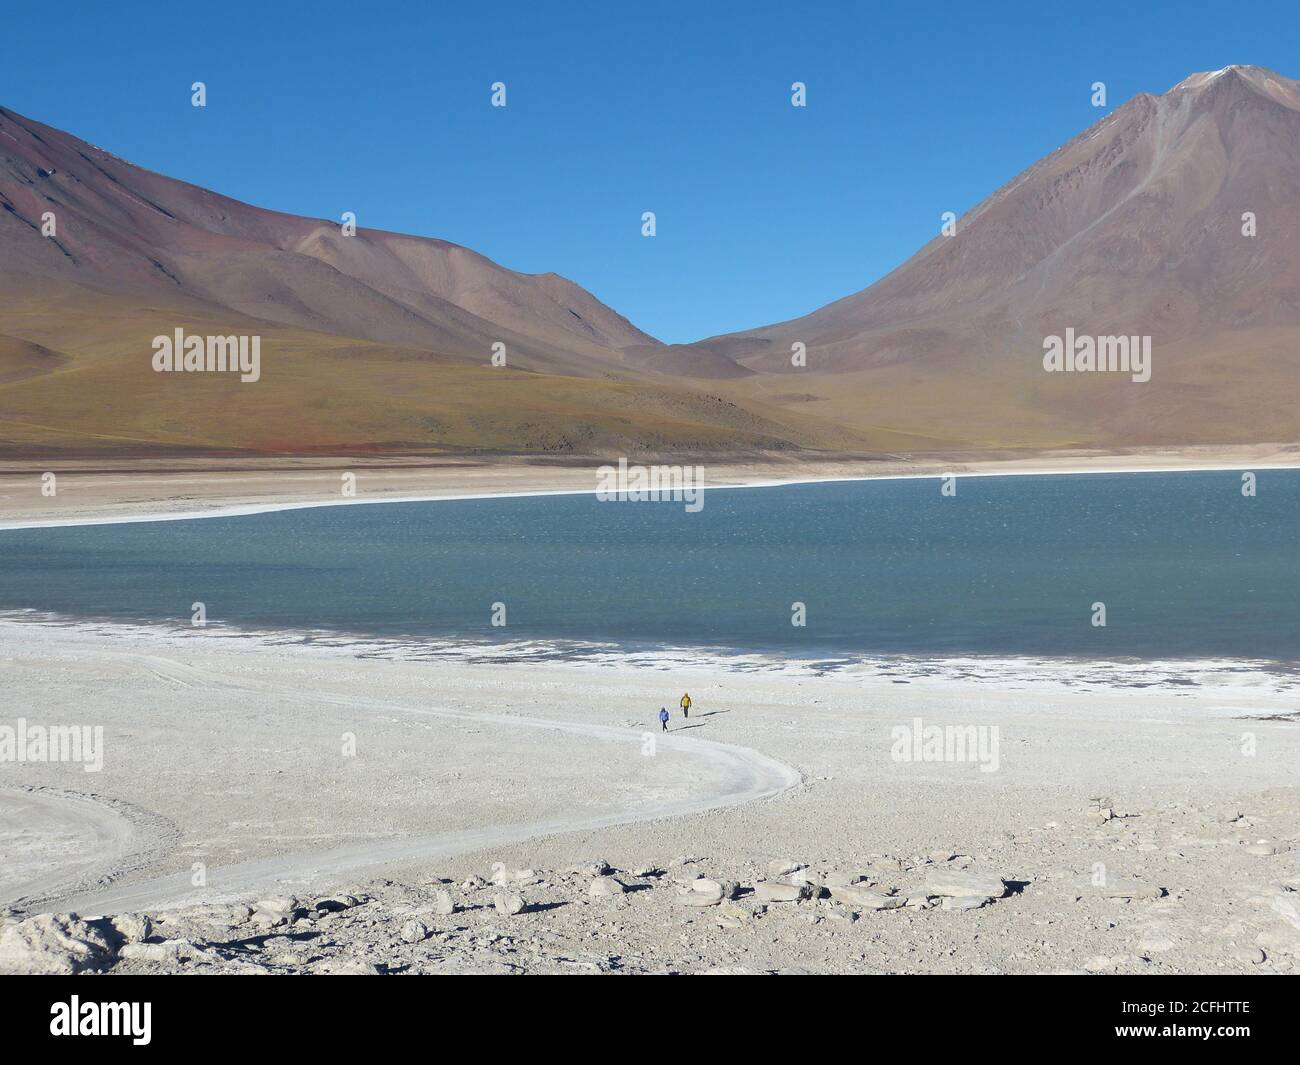 Le lac minéral vert émeraude de Laguna verde est situé en Bolivie Banque D'Images